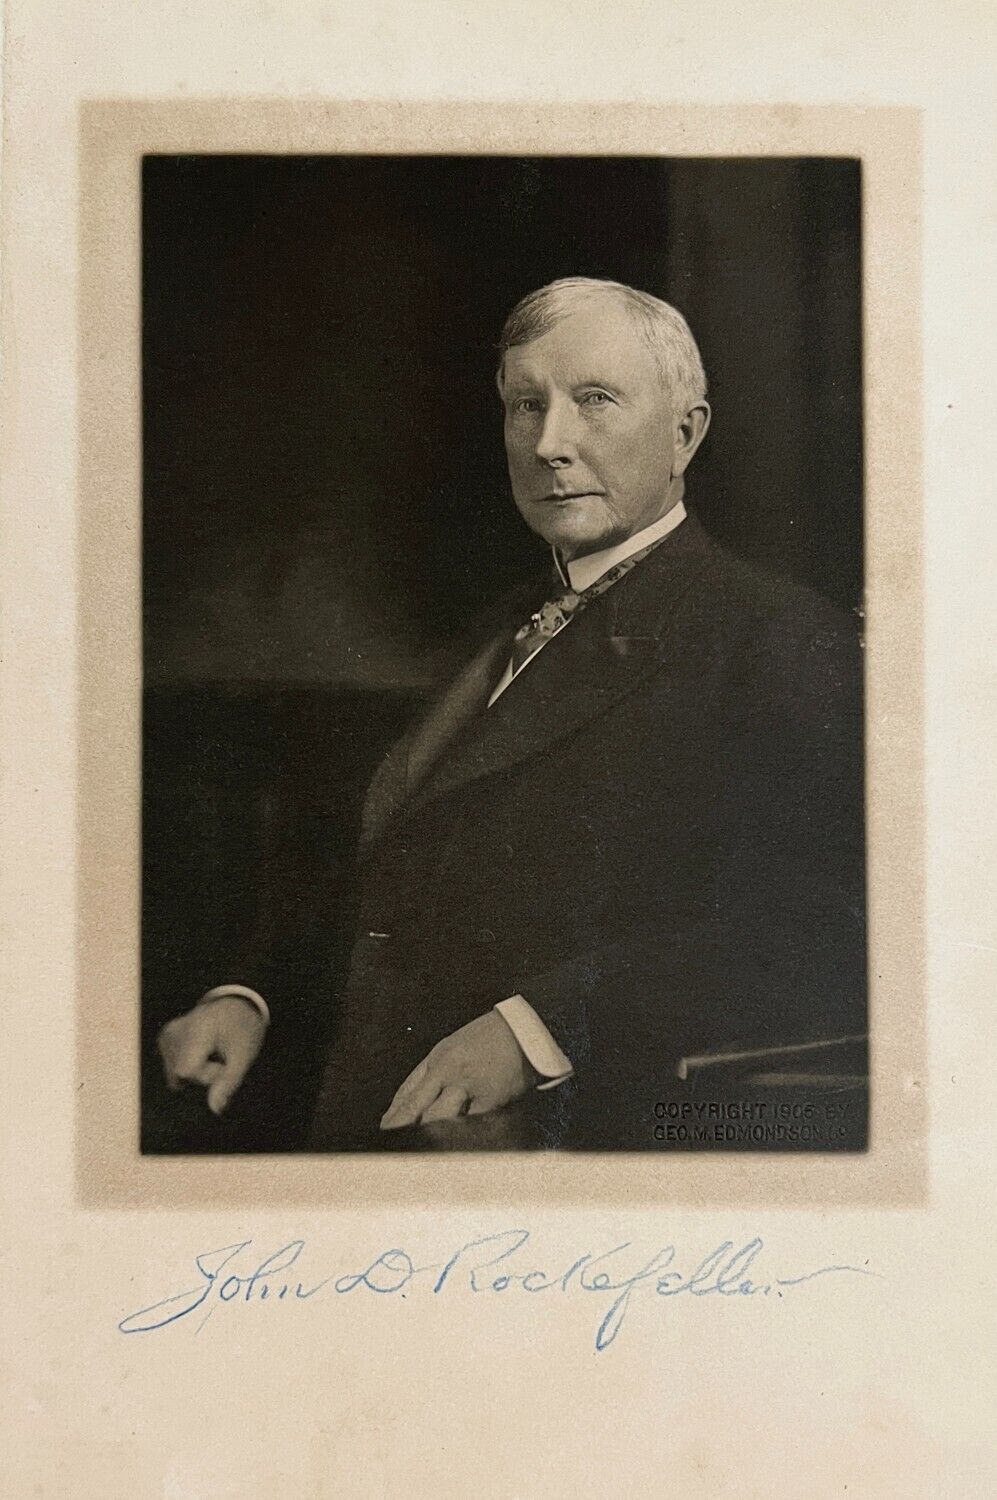 Rare John D Rockefeller Signed Photo, Full Name Signature. Auto PSA